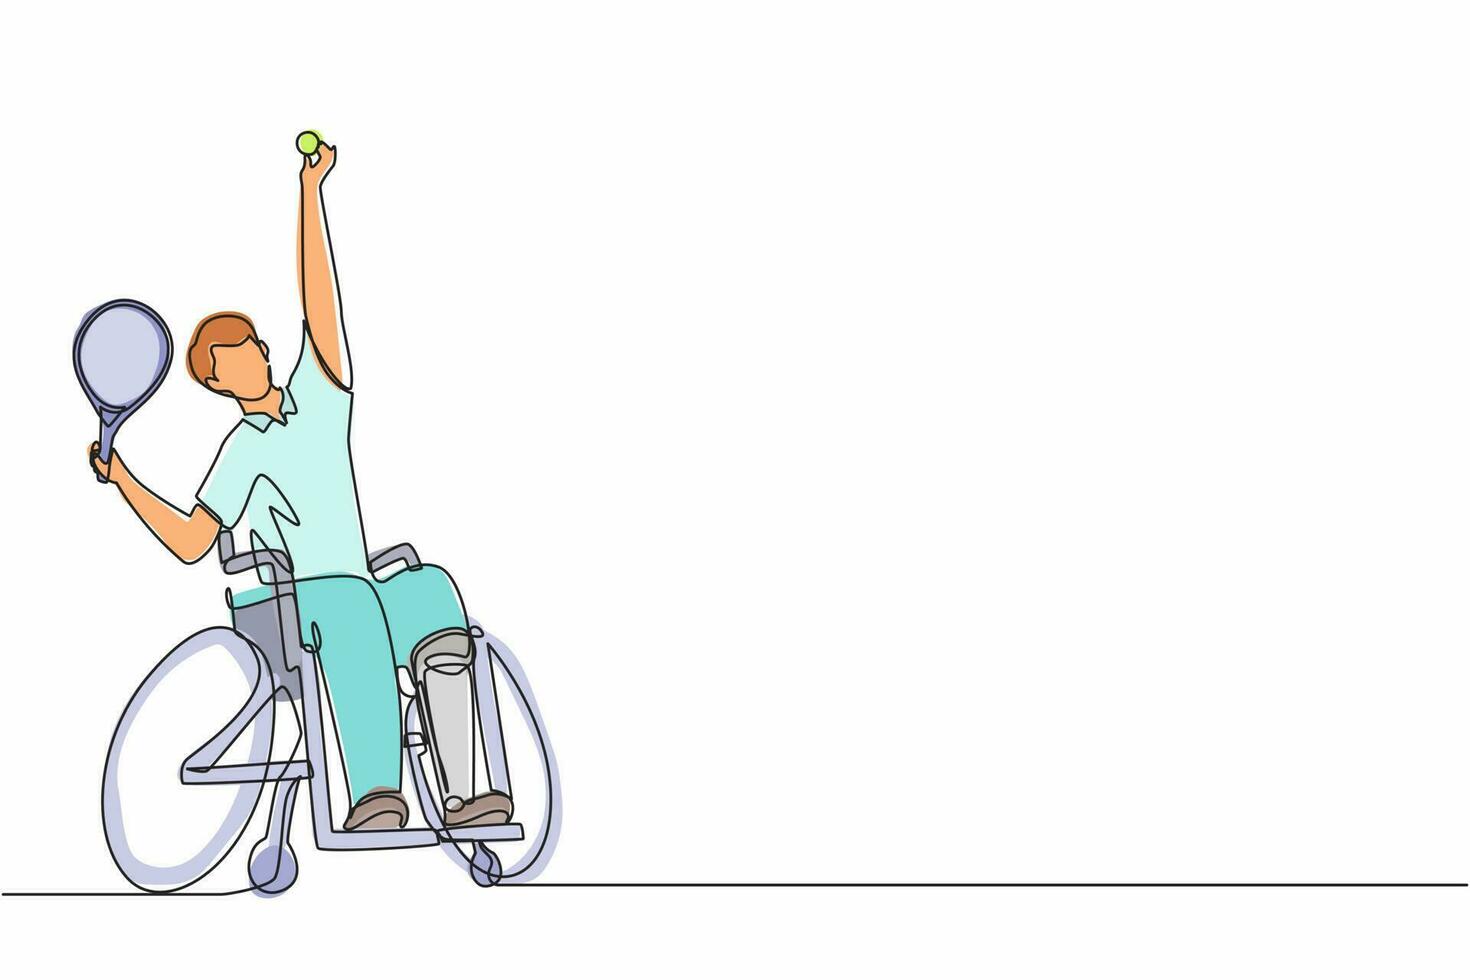 sport di tennis su sedia a rotelle con disegno a linea continua. atleta in sedia a rotelle con racchetta. persone attive. uomo. disabilità, politica sociale. supporto sociale. vettore di disegno grafico a linea singola